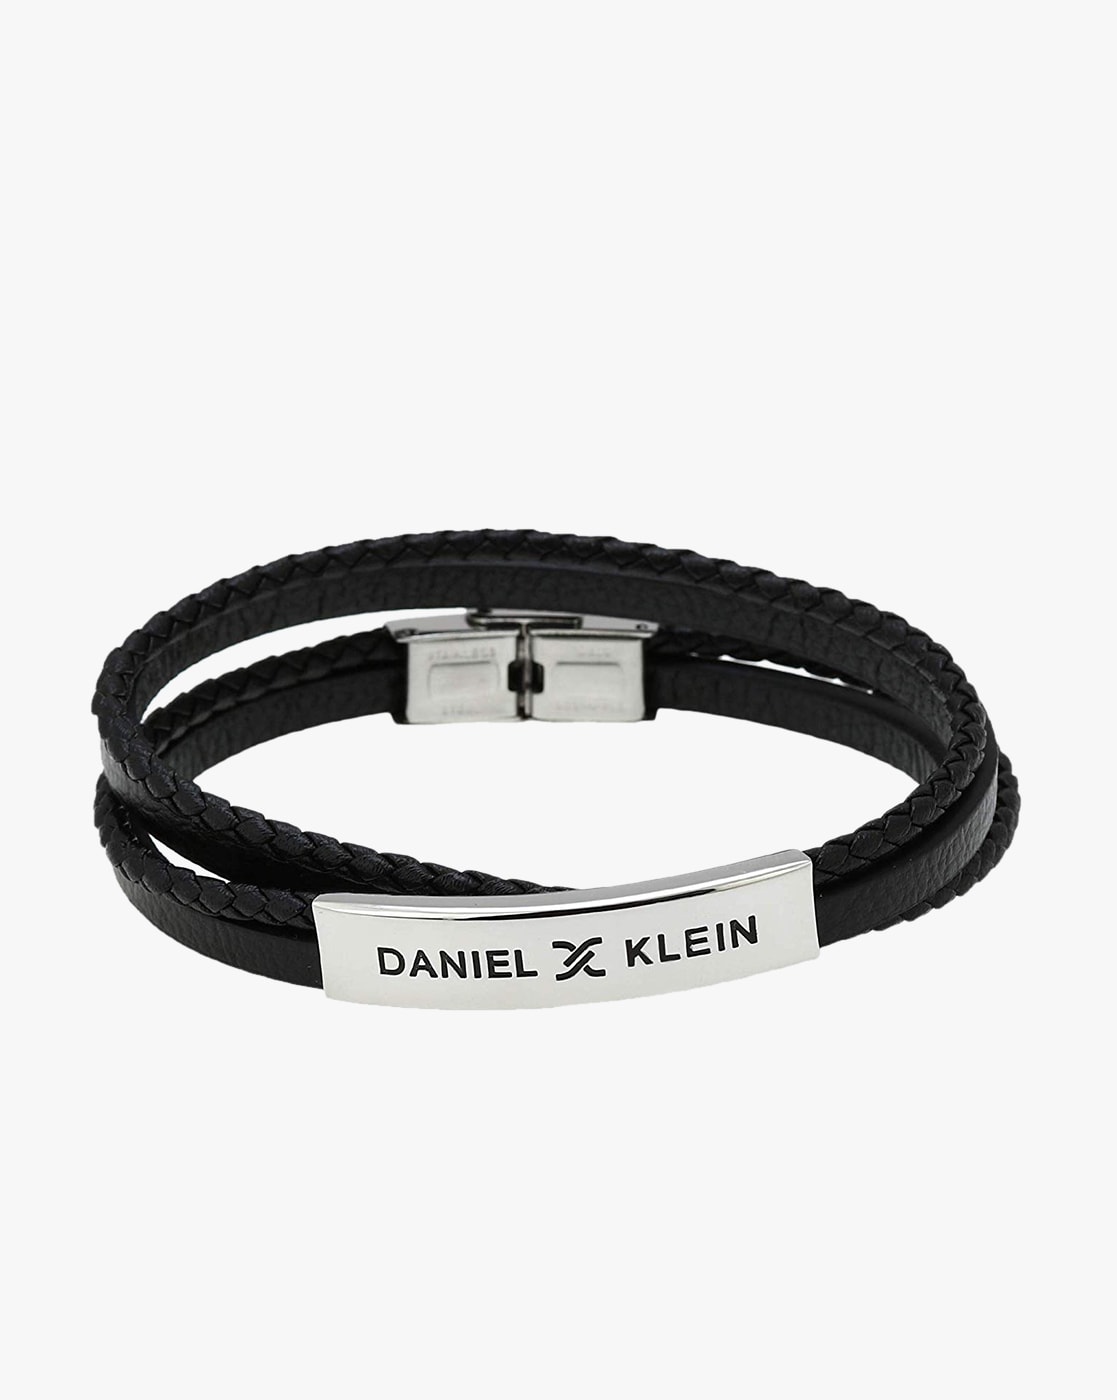 Ladies Watch DANIEL KLEIN Crystals Gold Stainless Steel Bracelet DK113205-3  - E-oro.gr DANIEL KLEIN WATCHES